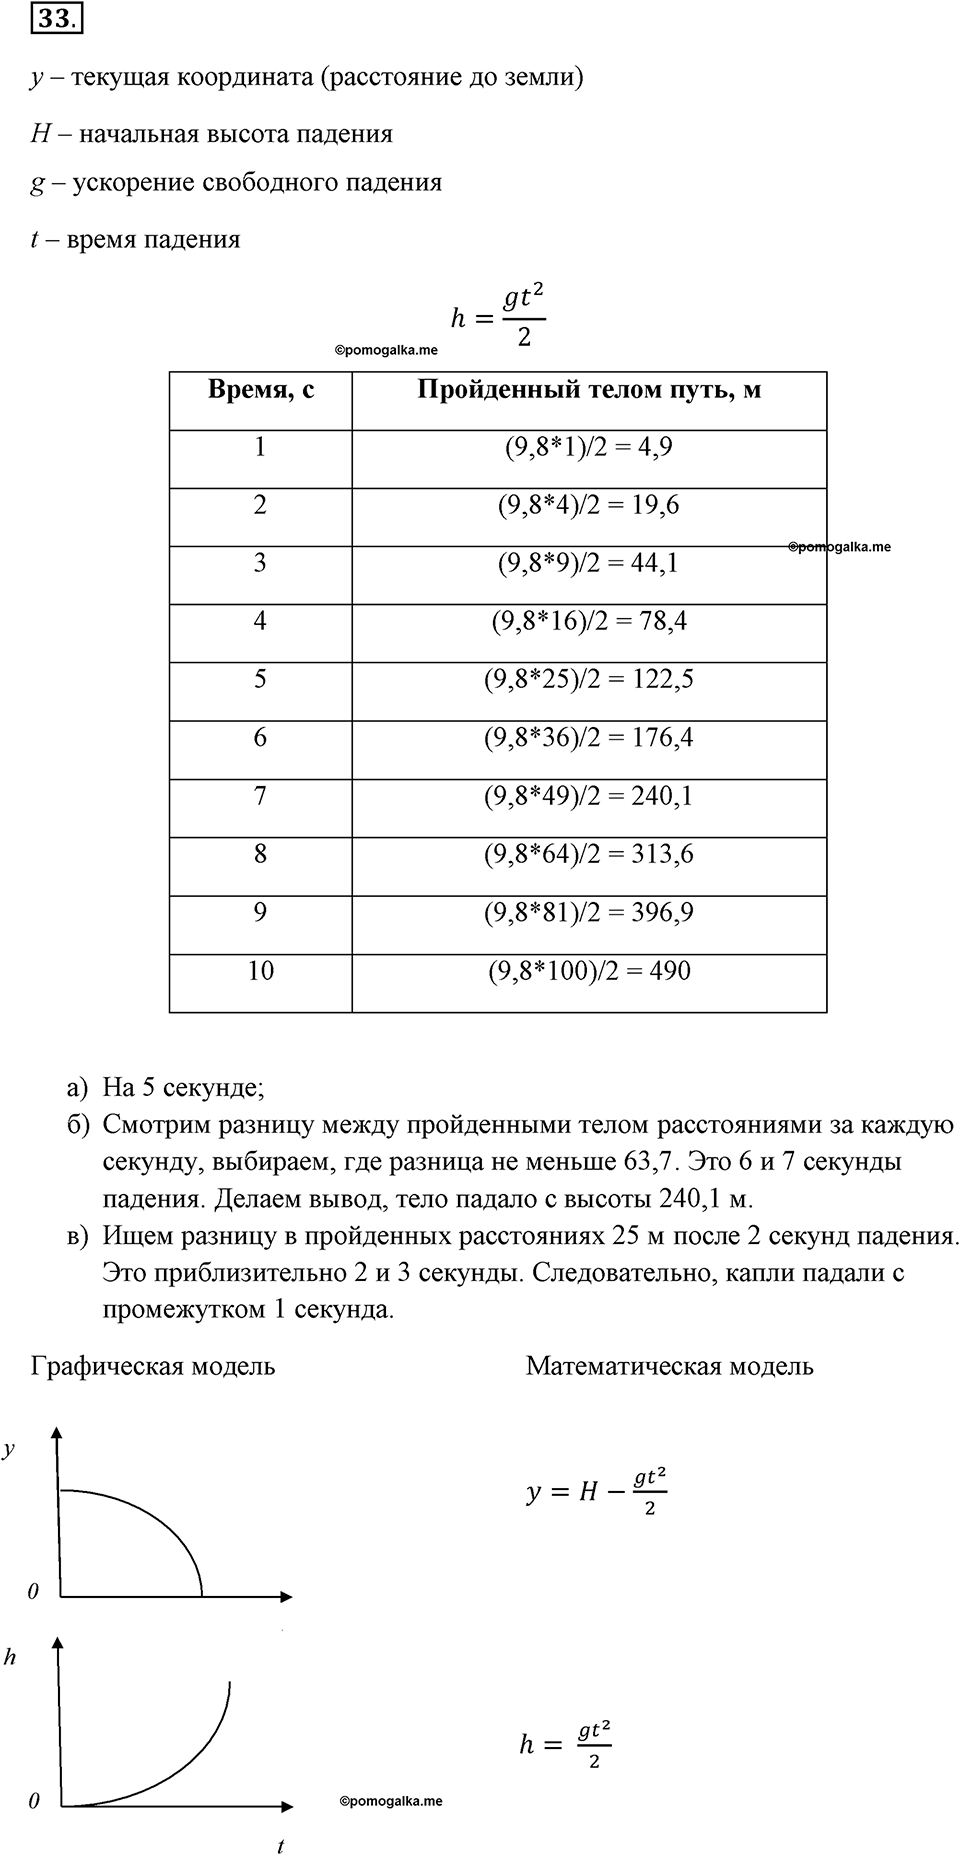 задача №33 рабочая тетрадь по информатике 9 класс Босова